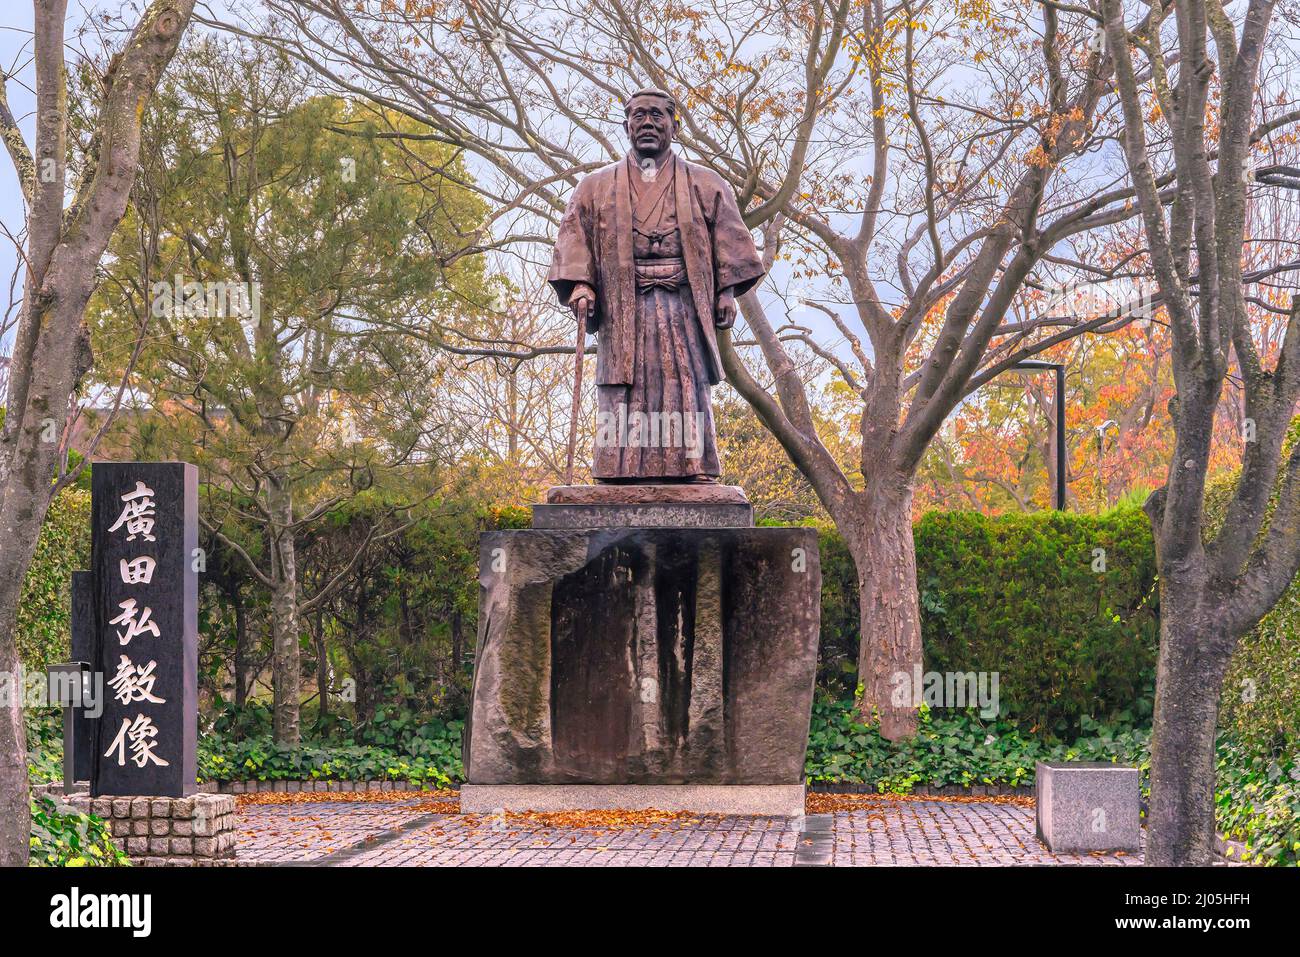 fukuoka, kyushu - 09 2021. april: Statue, die von der Erdölgesellschaft Idemitsu im Ōhori-Park aufgestellt wurde und den alten japanischen Premierminister darstellt, der für den Krieg hingerichtet wurde Stockfoto